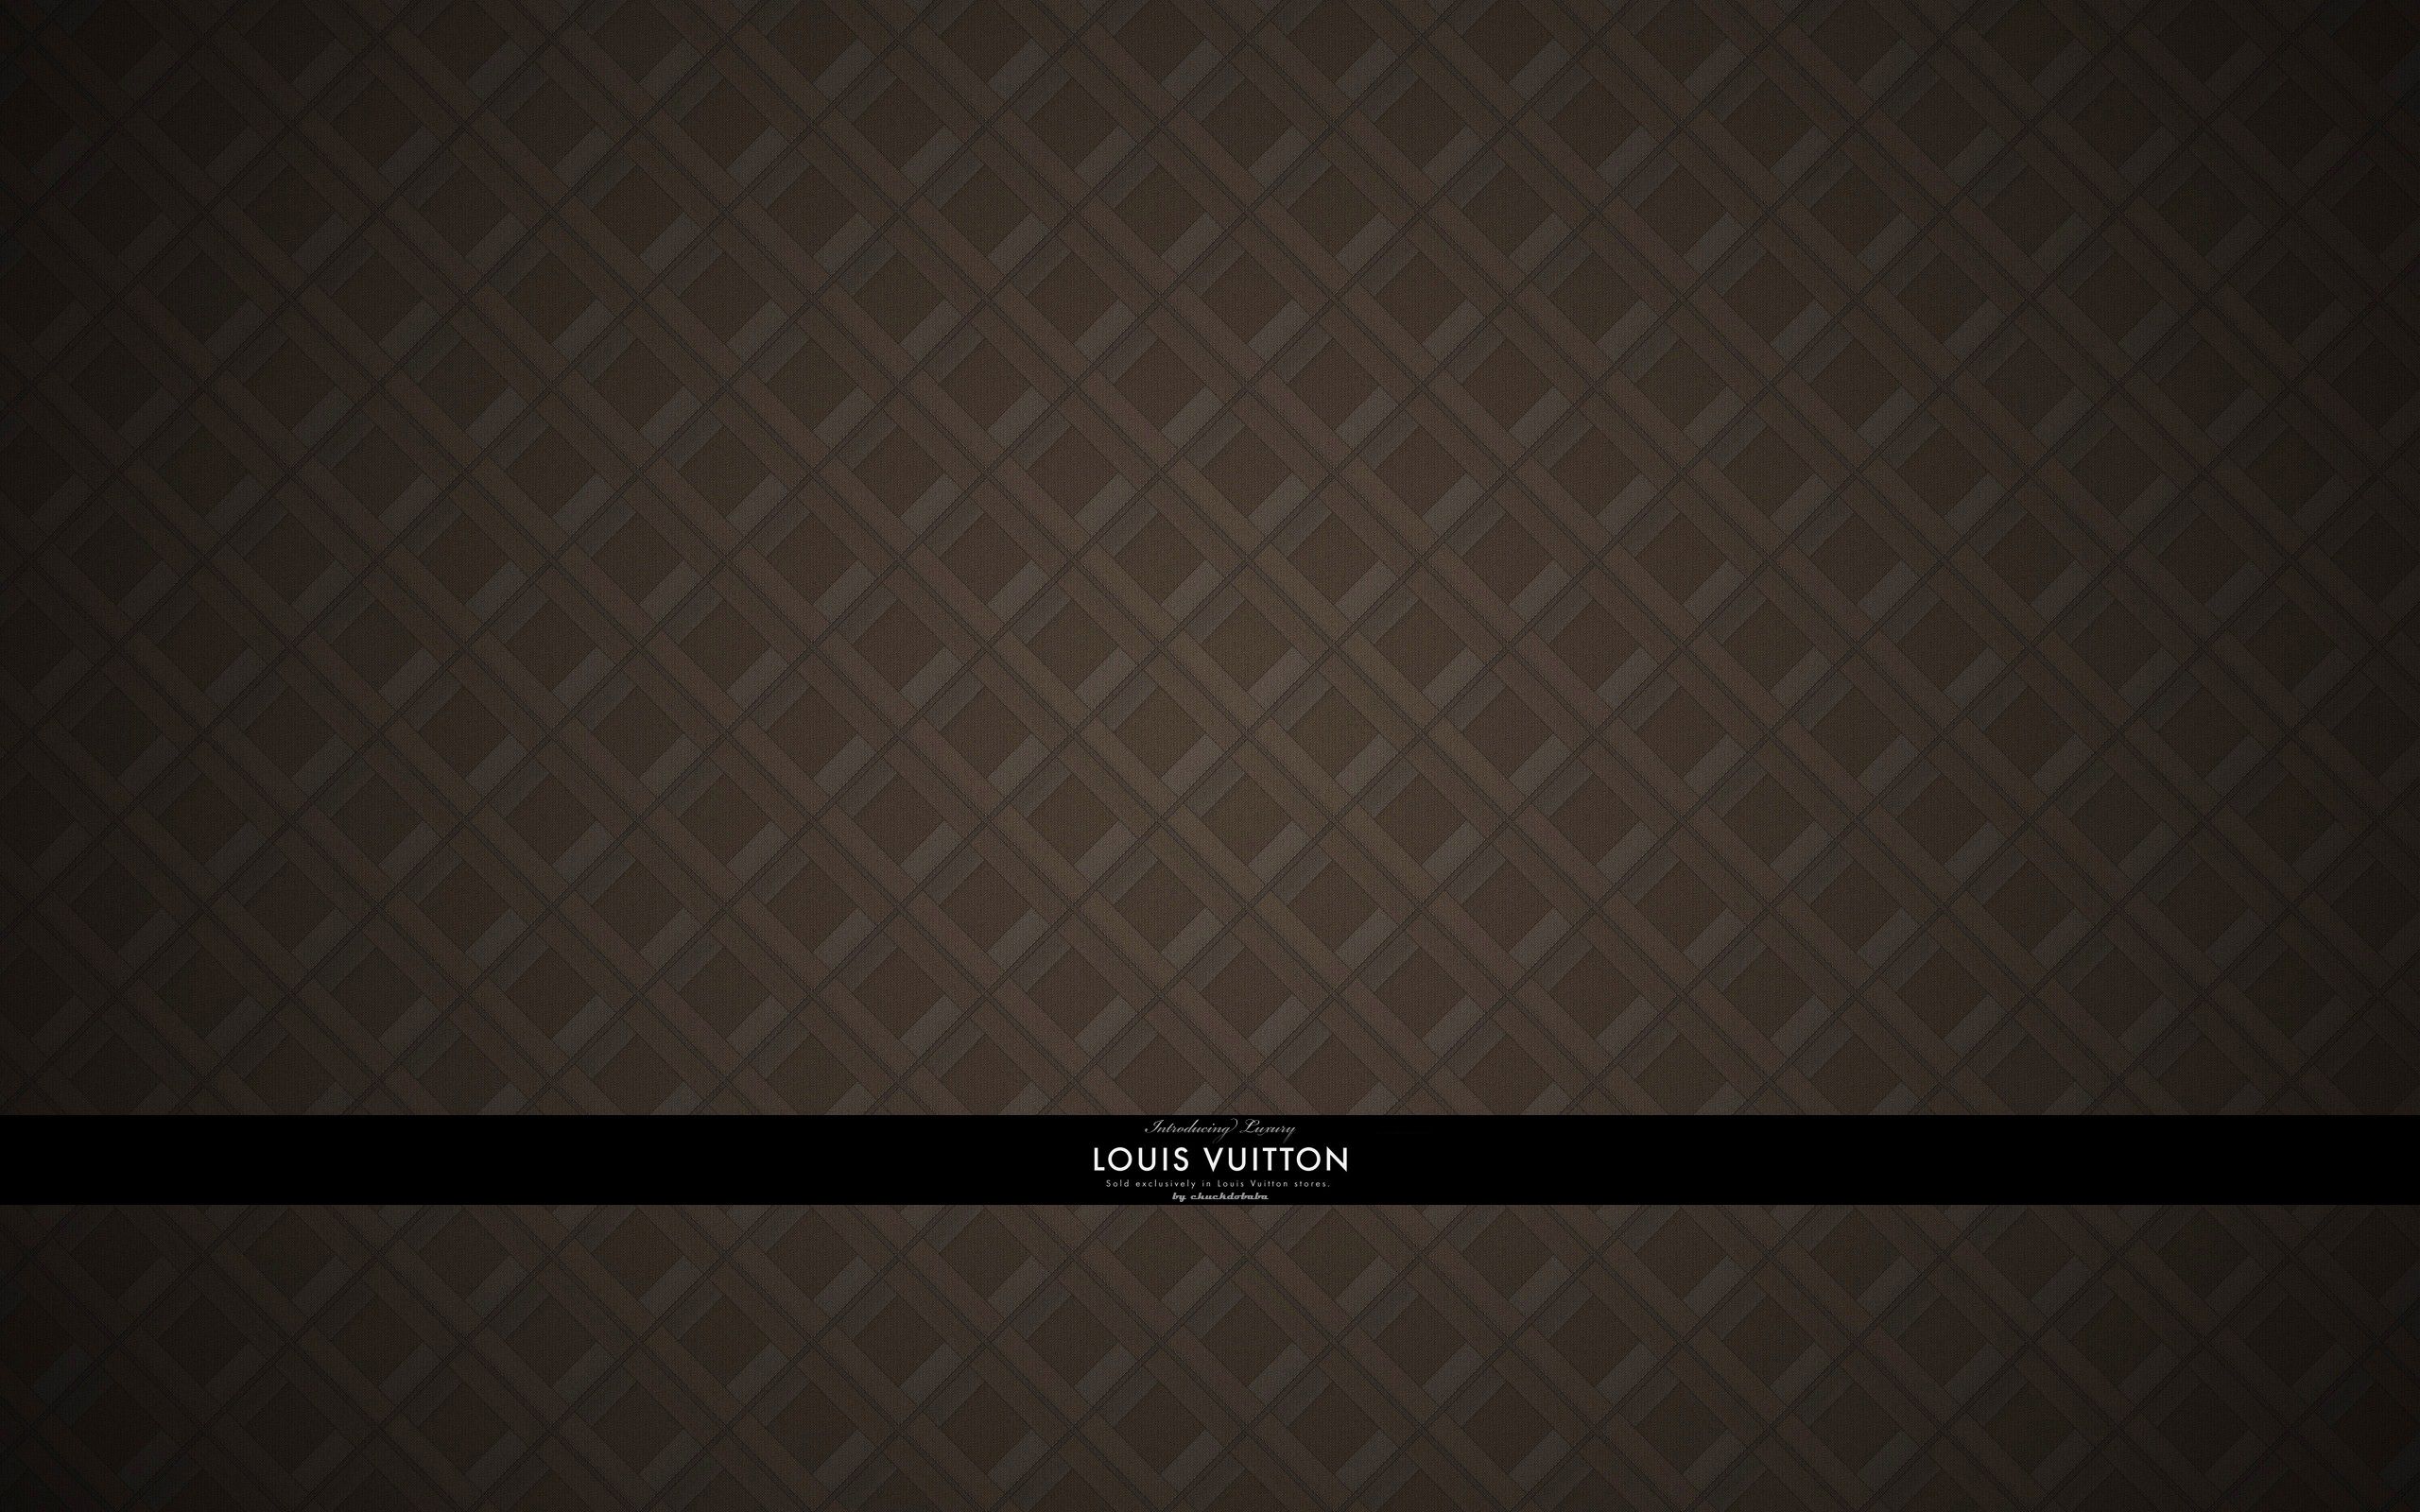 Free download Louis Vuitton Wallpaper [2560x1600]